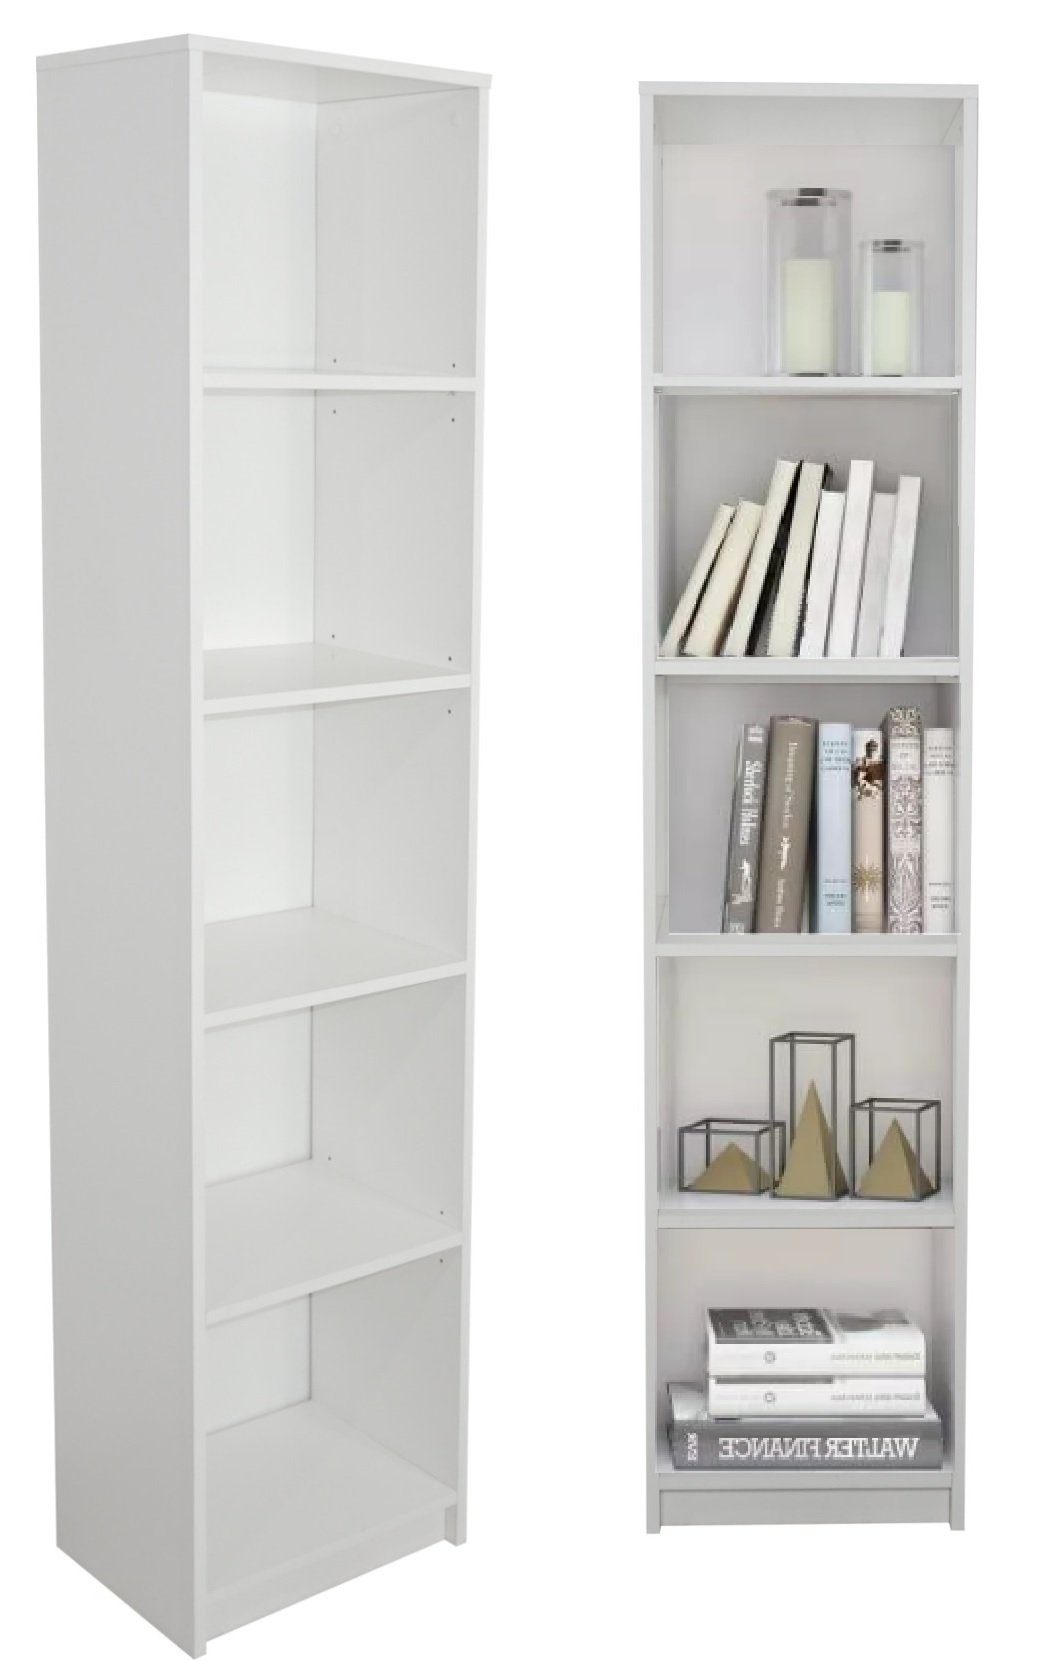 Home Collective Bücherregal Aktenregal Standregal Raumteiler mit 5 offenen Fächern aus MDF Holz, in weiß, Breite 40 cm